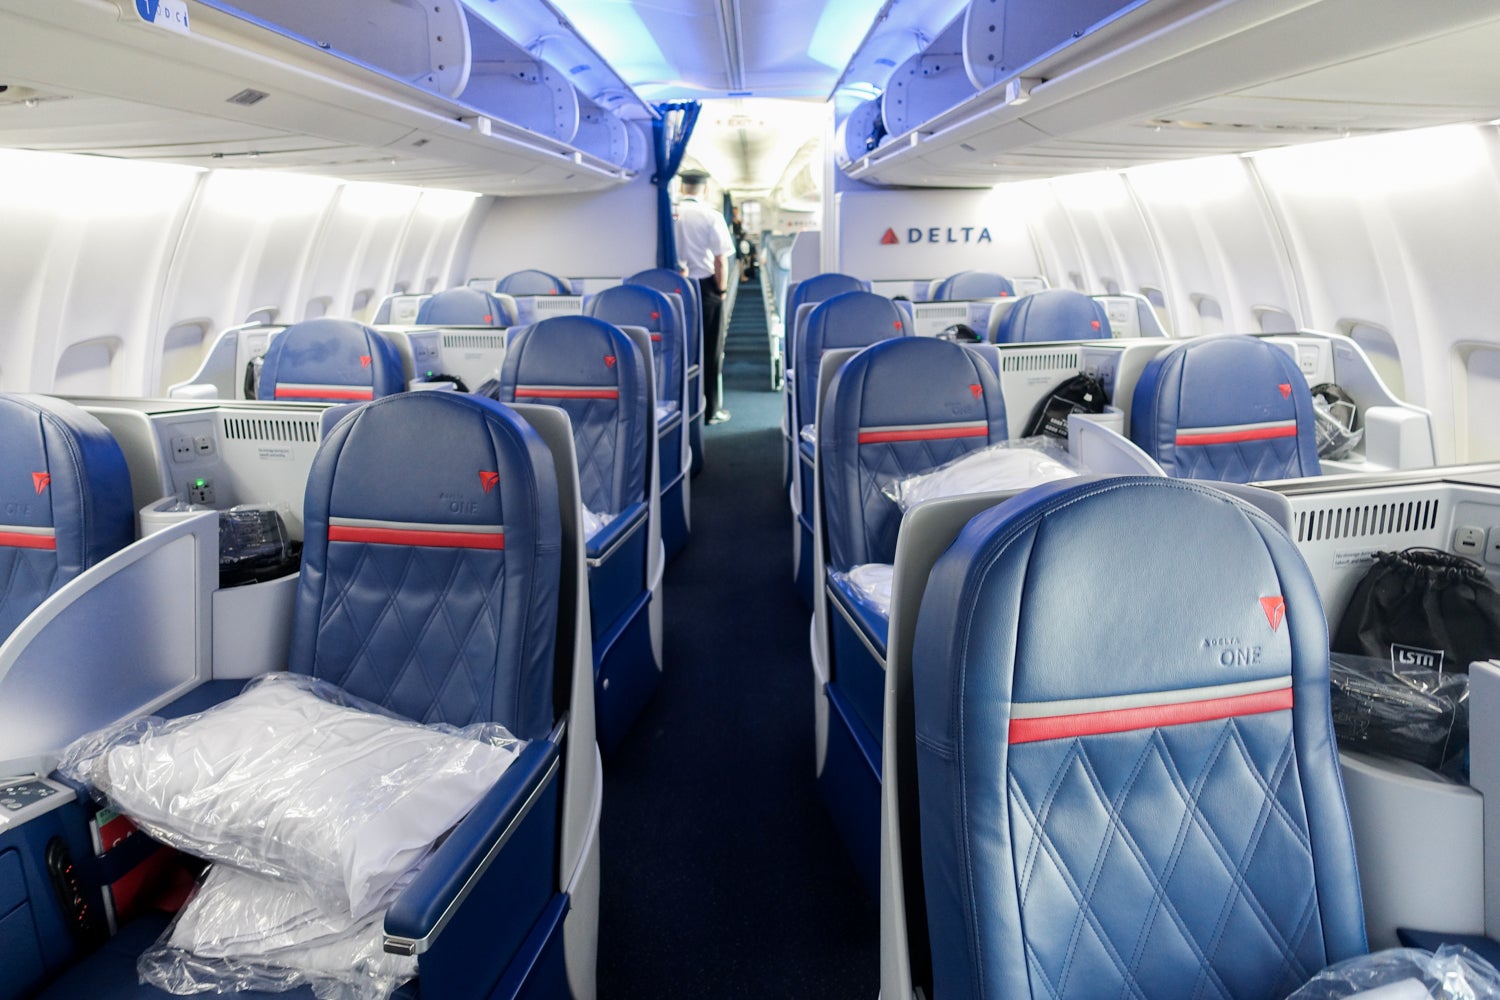 Delta 757-200 (Delta One cabin)